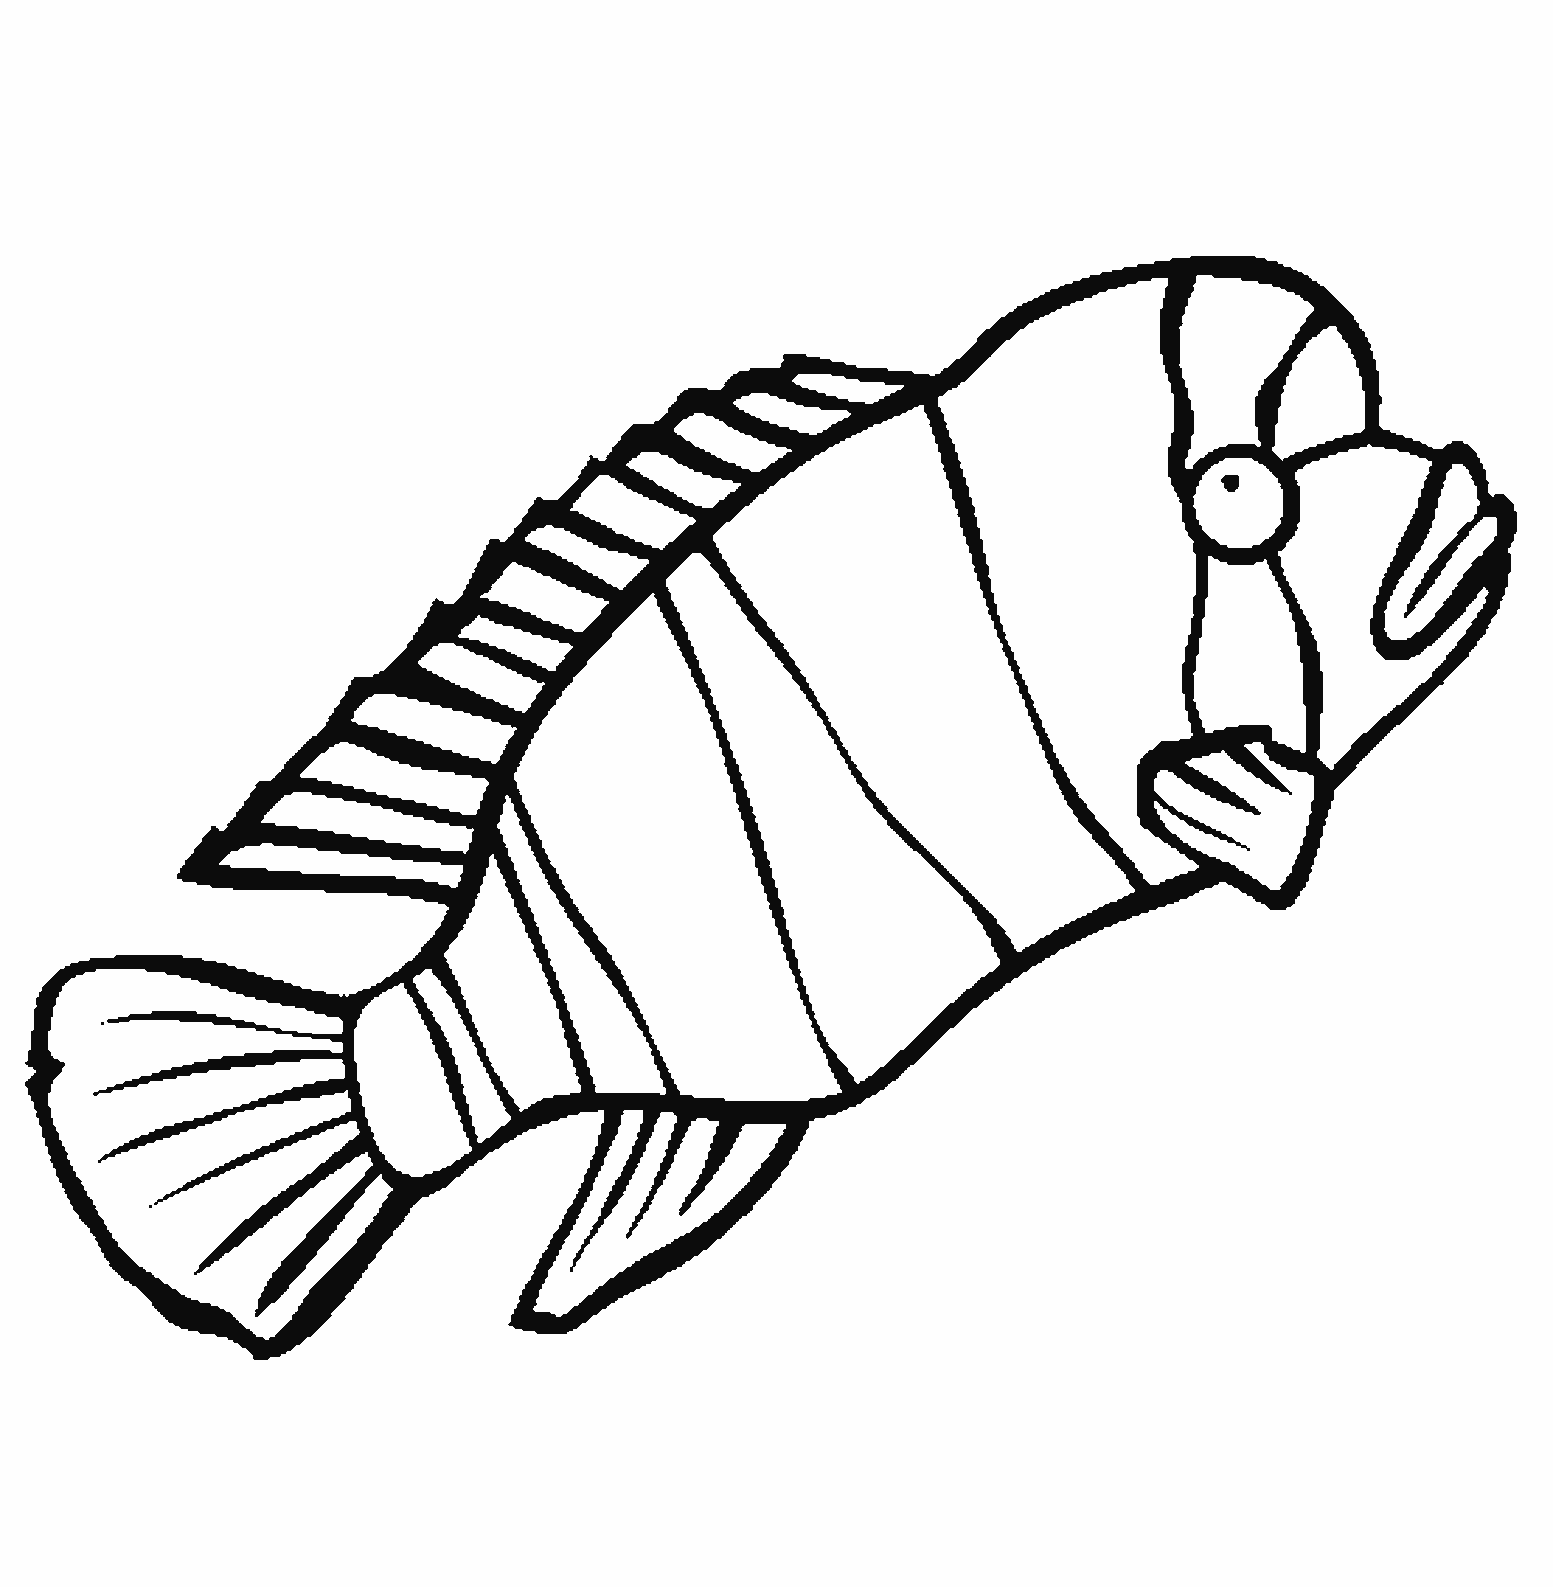 Gambar Sketsa Ikan Yang Mudah Sobsketsa